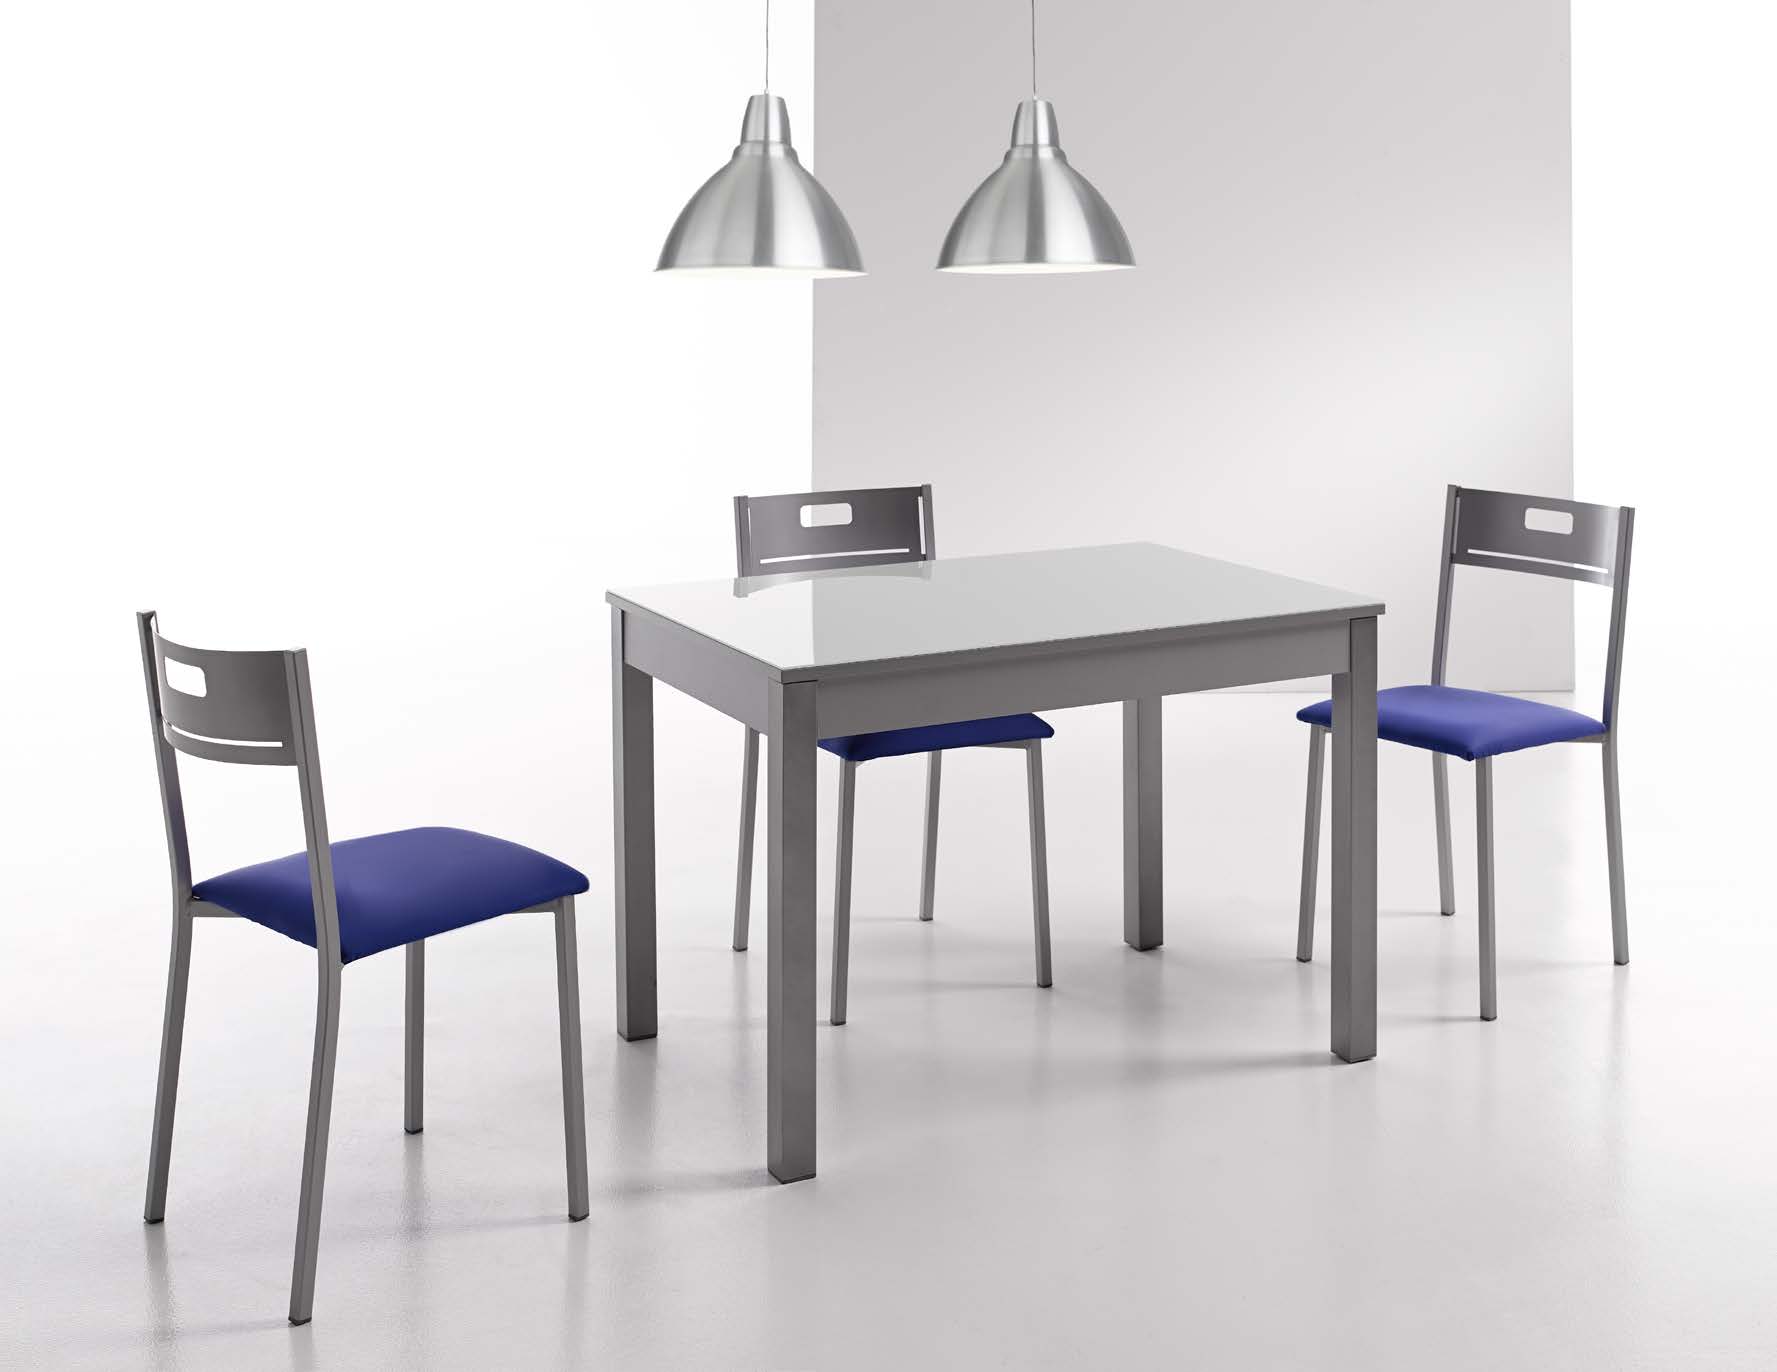 NRJ Design presenta kitchen Collection, nueva colección especializada en mesas, sillas y taburetes de cocina, donde encontrará las últimas tendencias del mercado, tanto en diseño como en acabados.